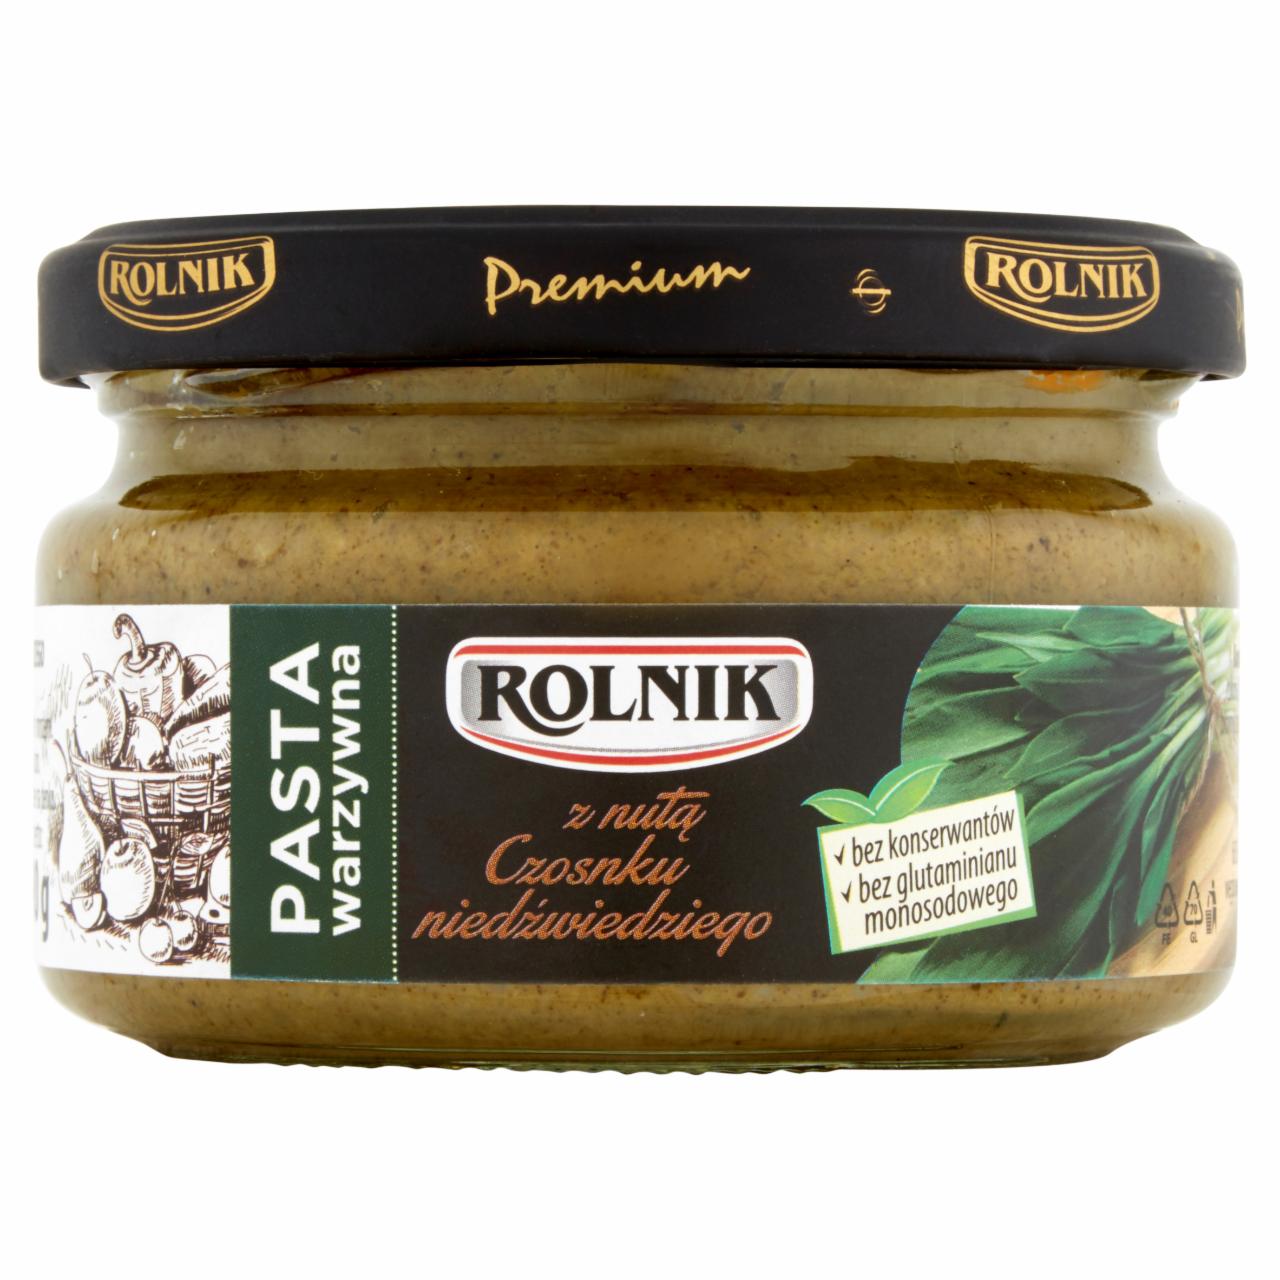 Zdjęcia - Rolnik Premium Pasta warzywna z nutą czosnku niedźwiedziego 190 g